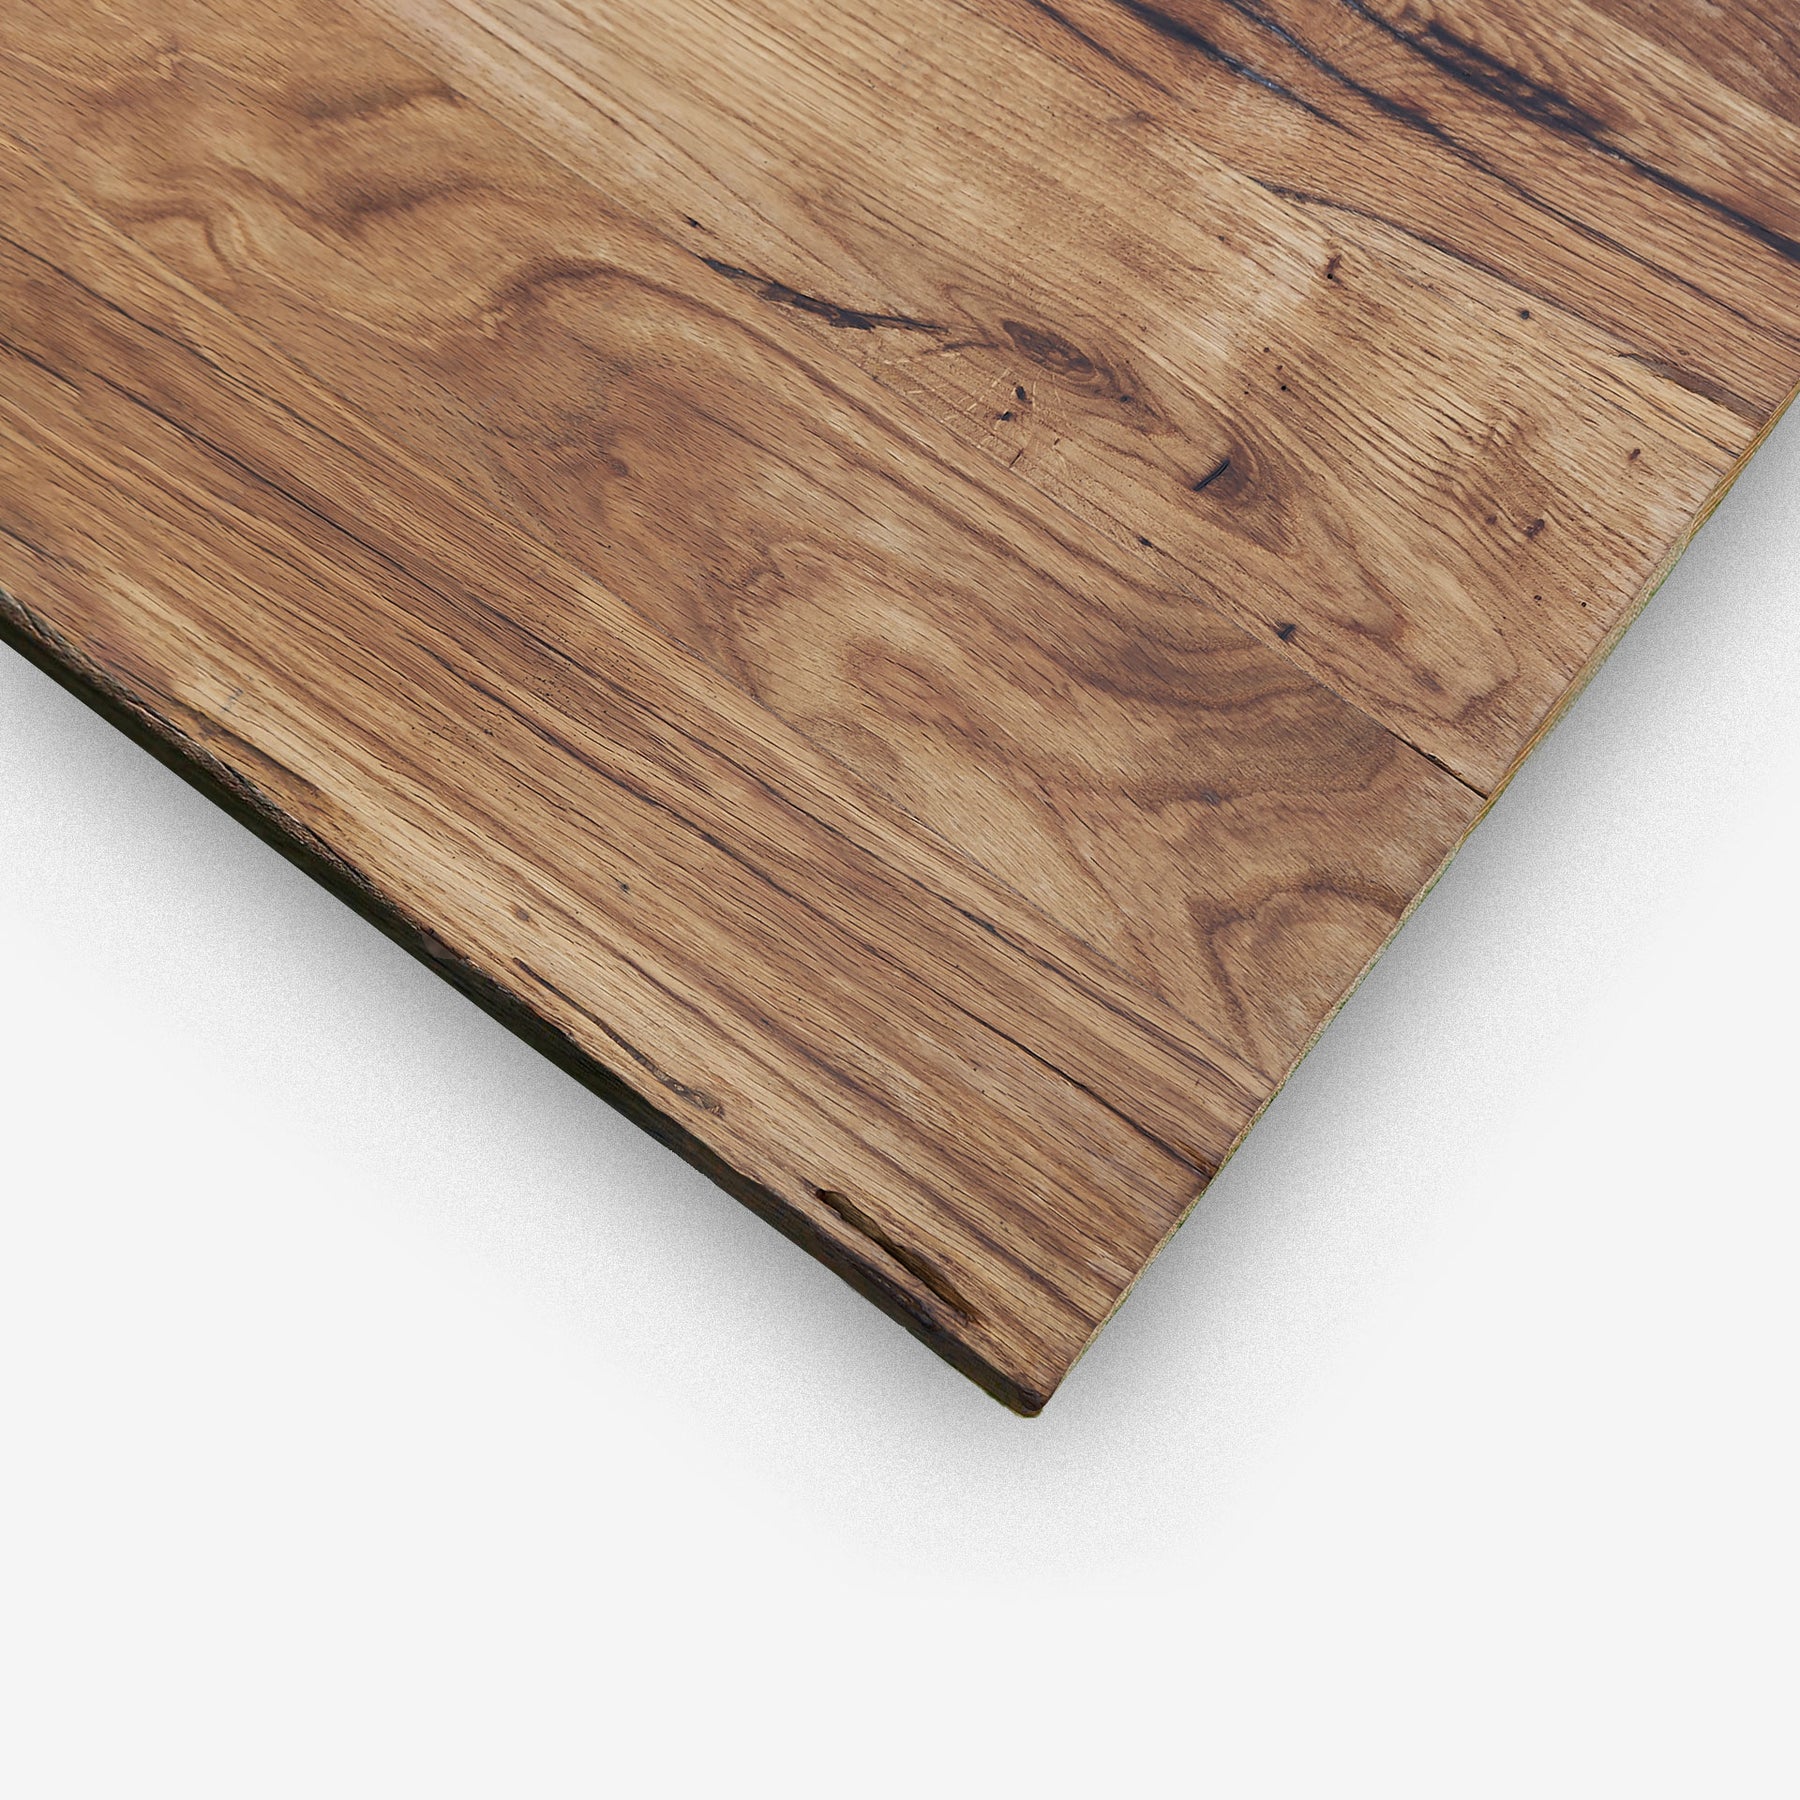 Tischplatte aus Altholz Eiche mit geschliffener und geölter Oberfläche und historischen Spuren